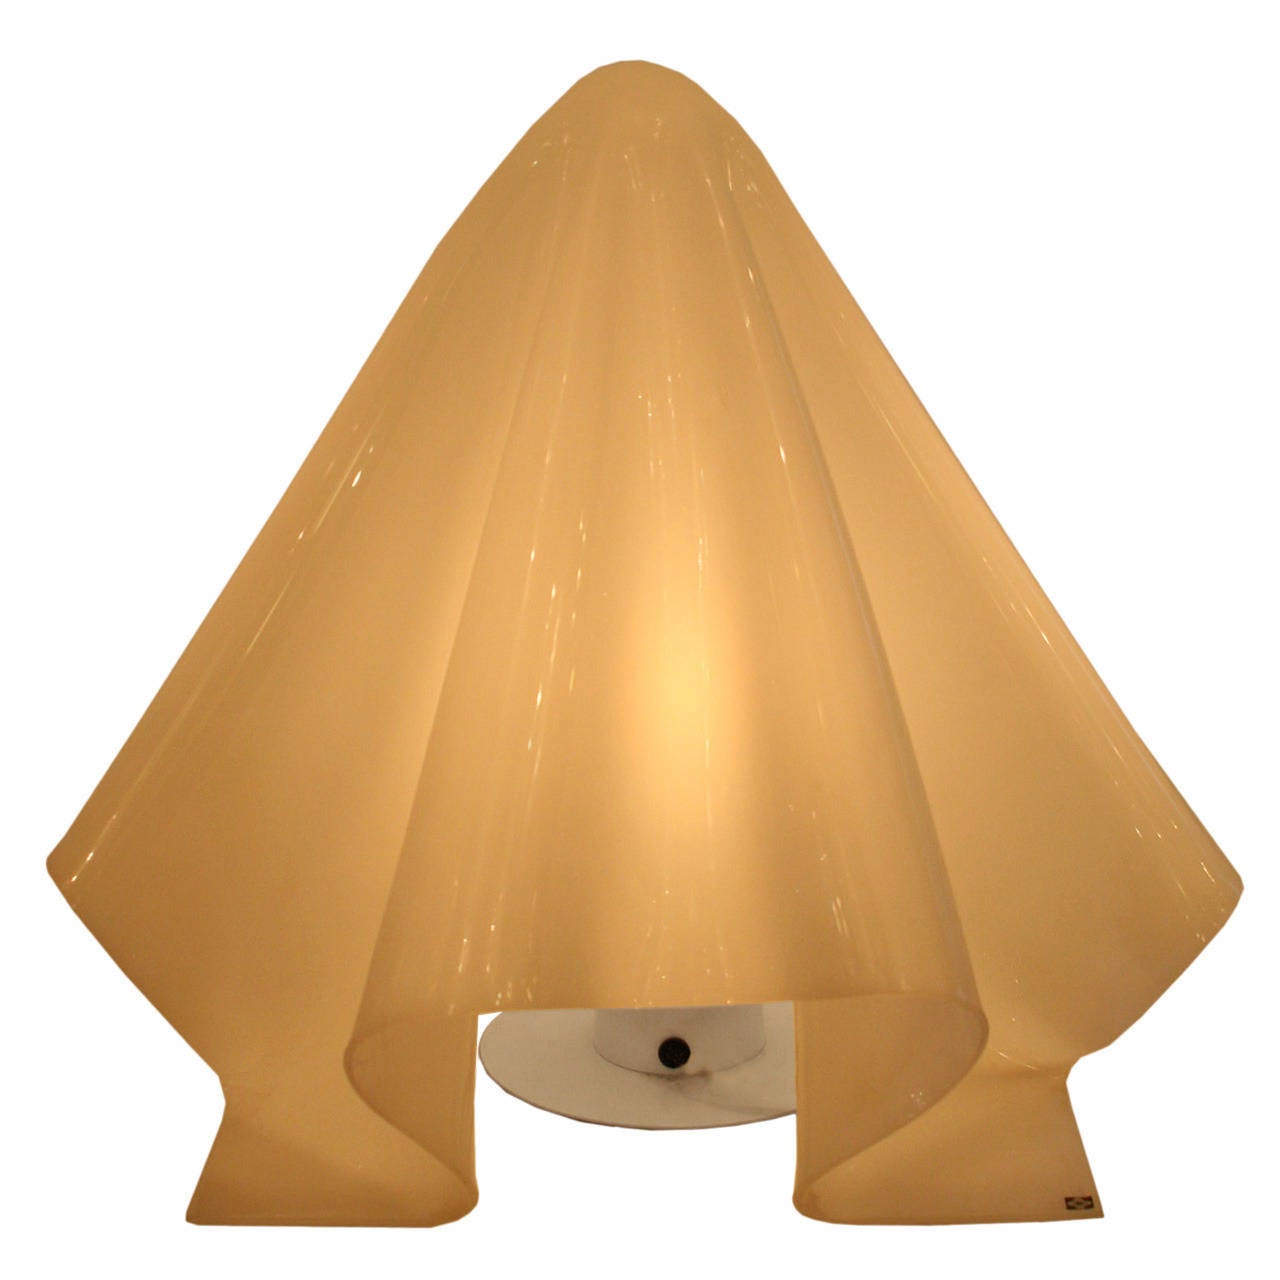 Shiro Kuramata "K" Lamp For Sale